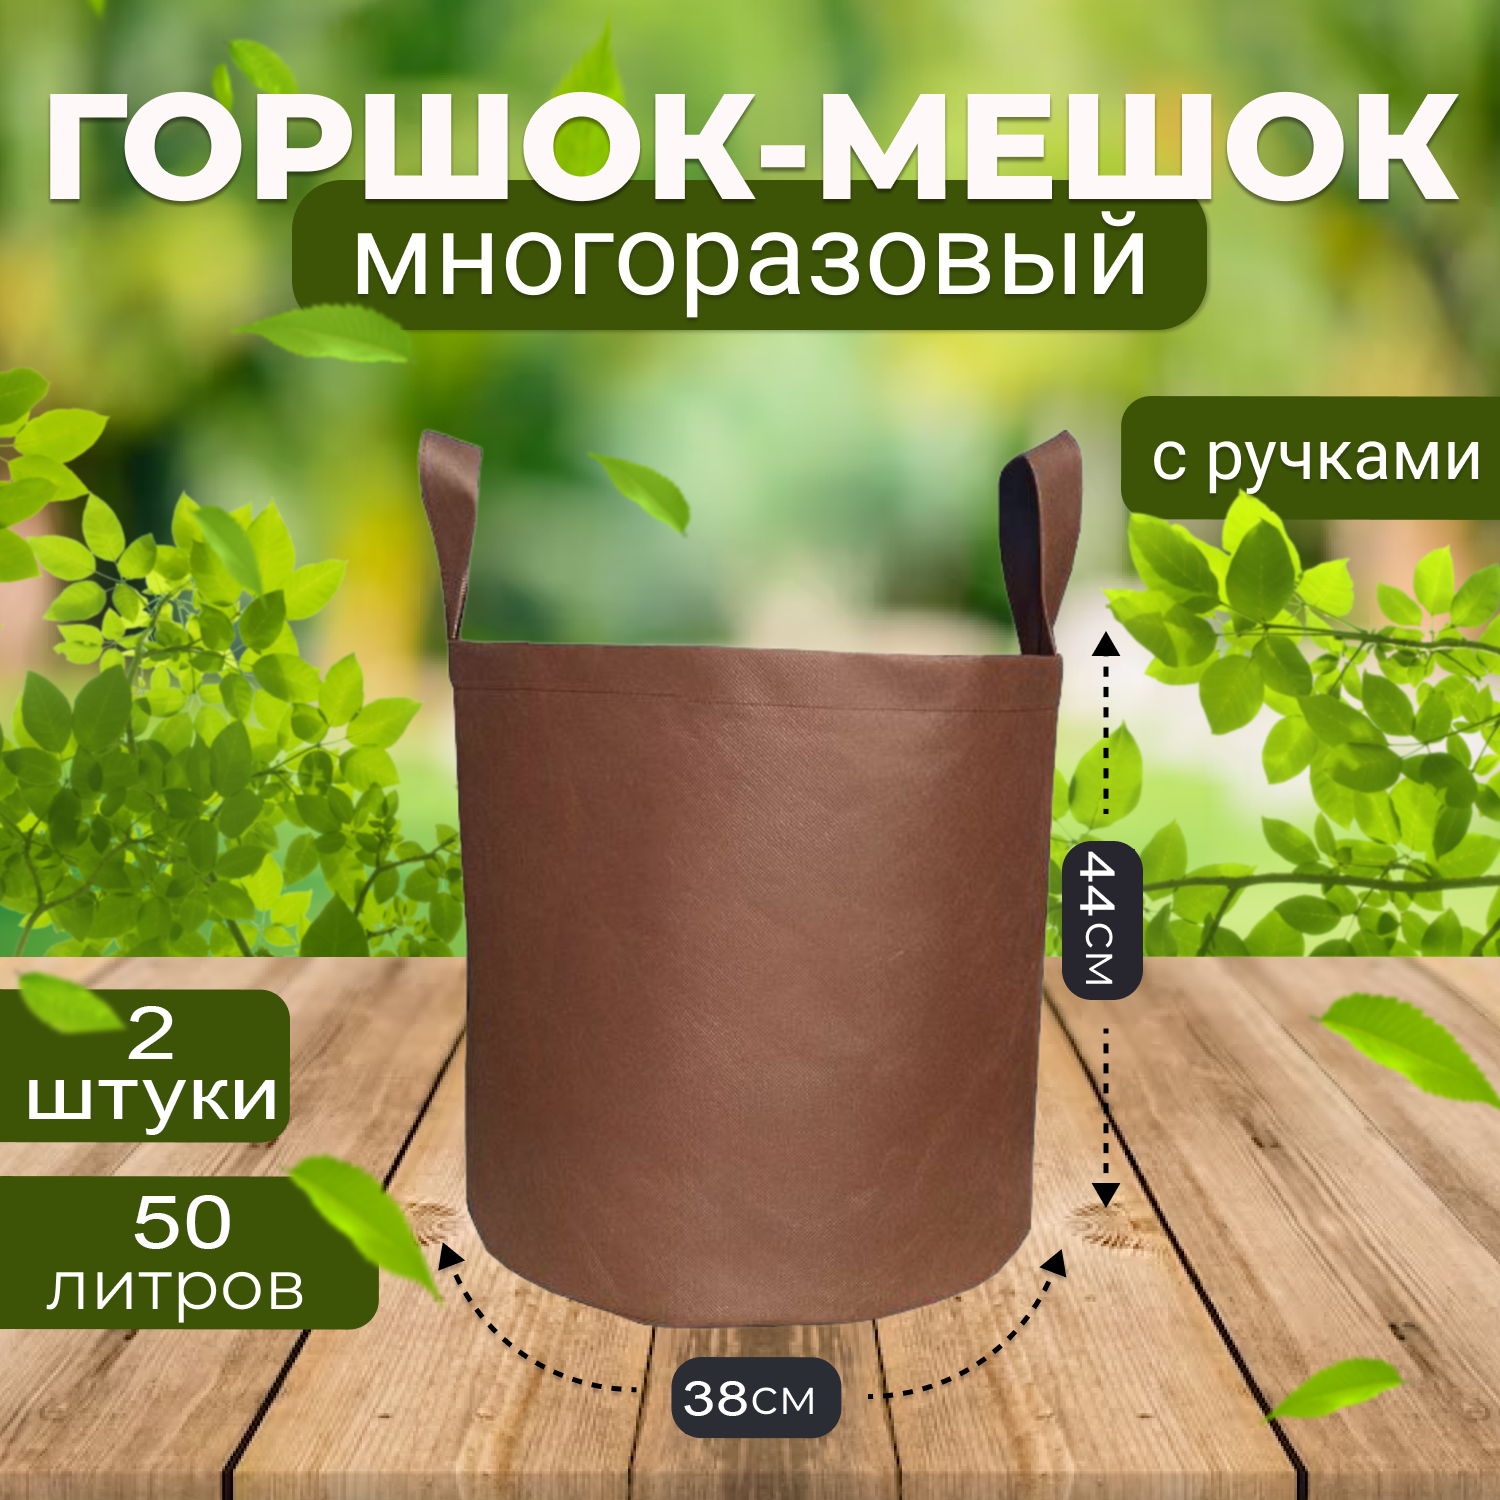 Мешок горшок текстильный из спанбонда Grower Green 50_litrov-Brown 50л., 2шт.